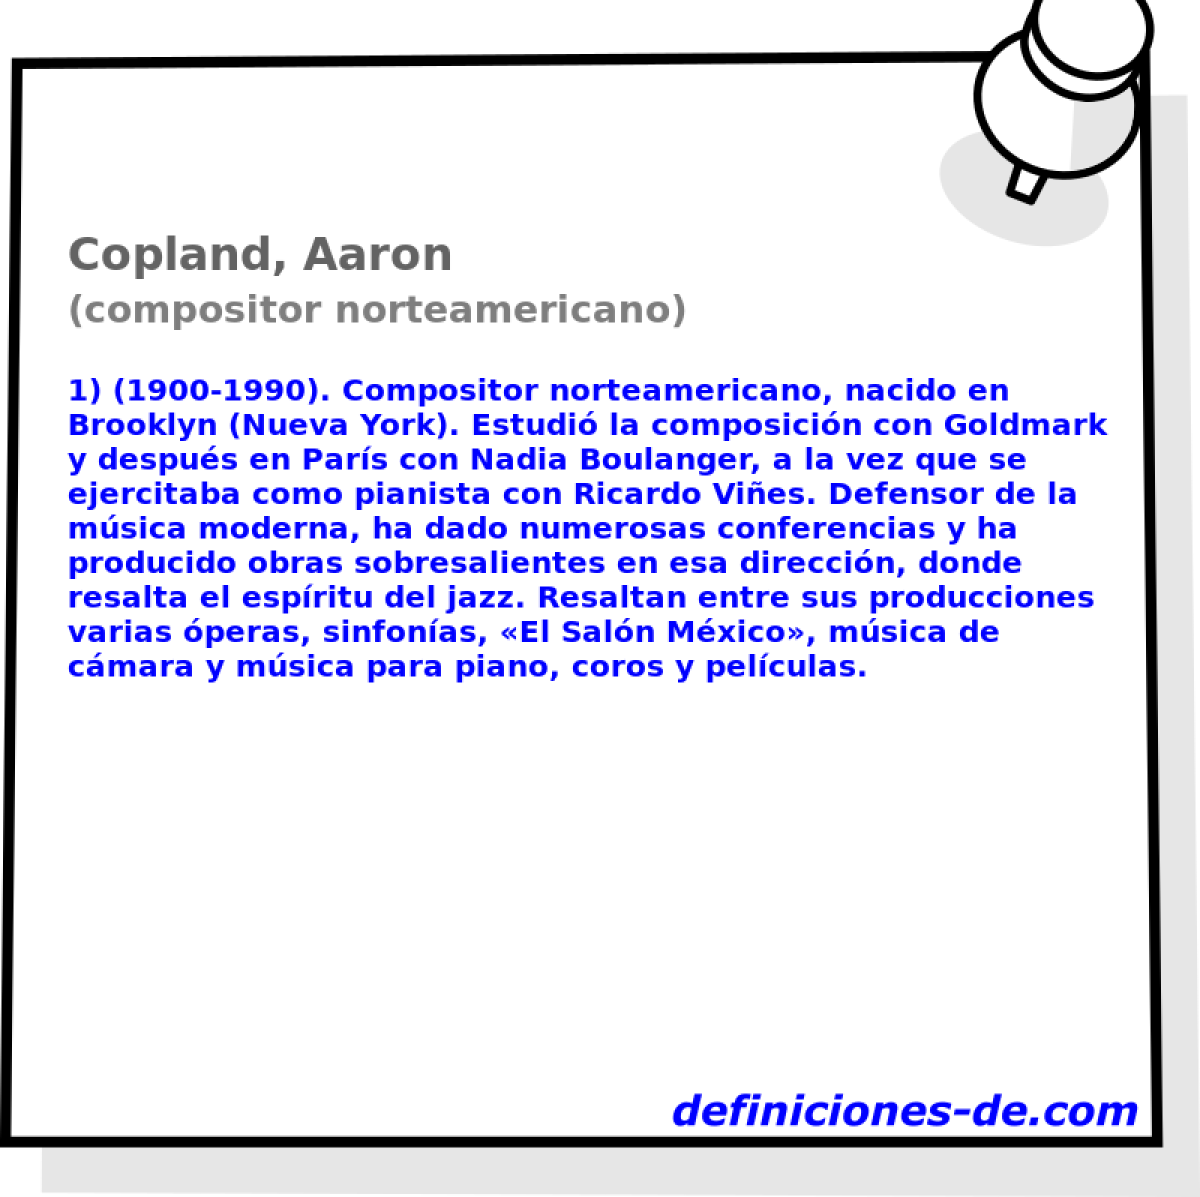 Copland, Aaron (compositor norteamericano)